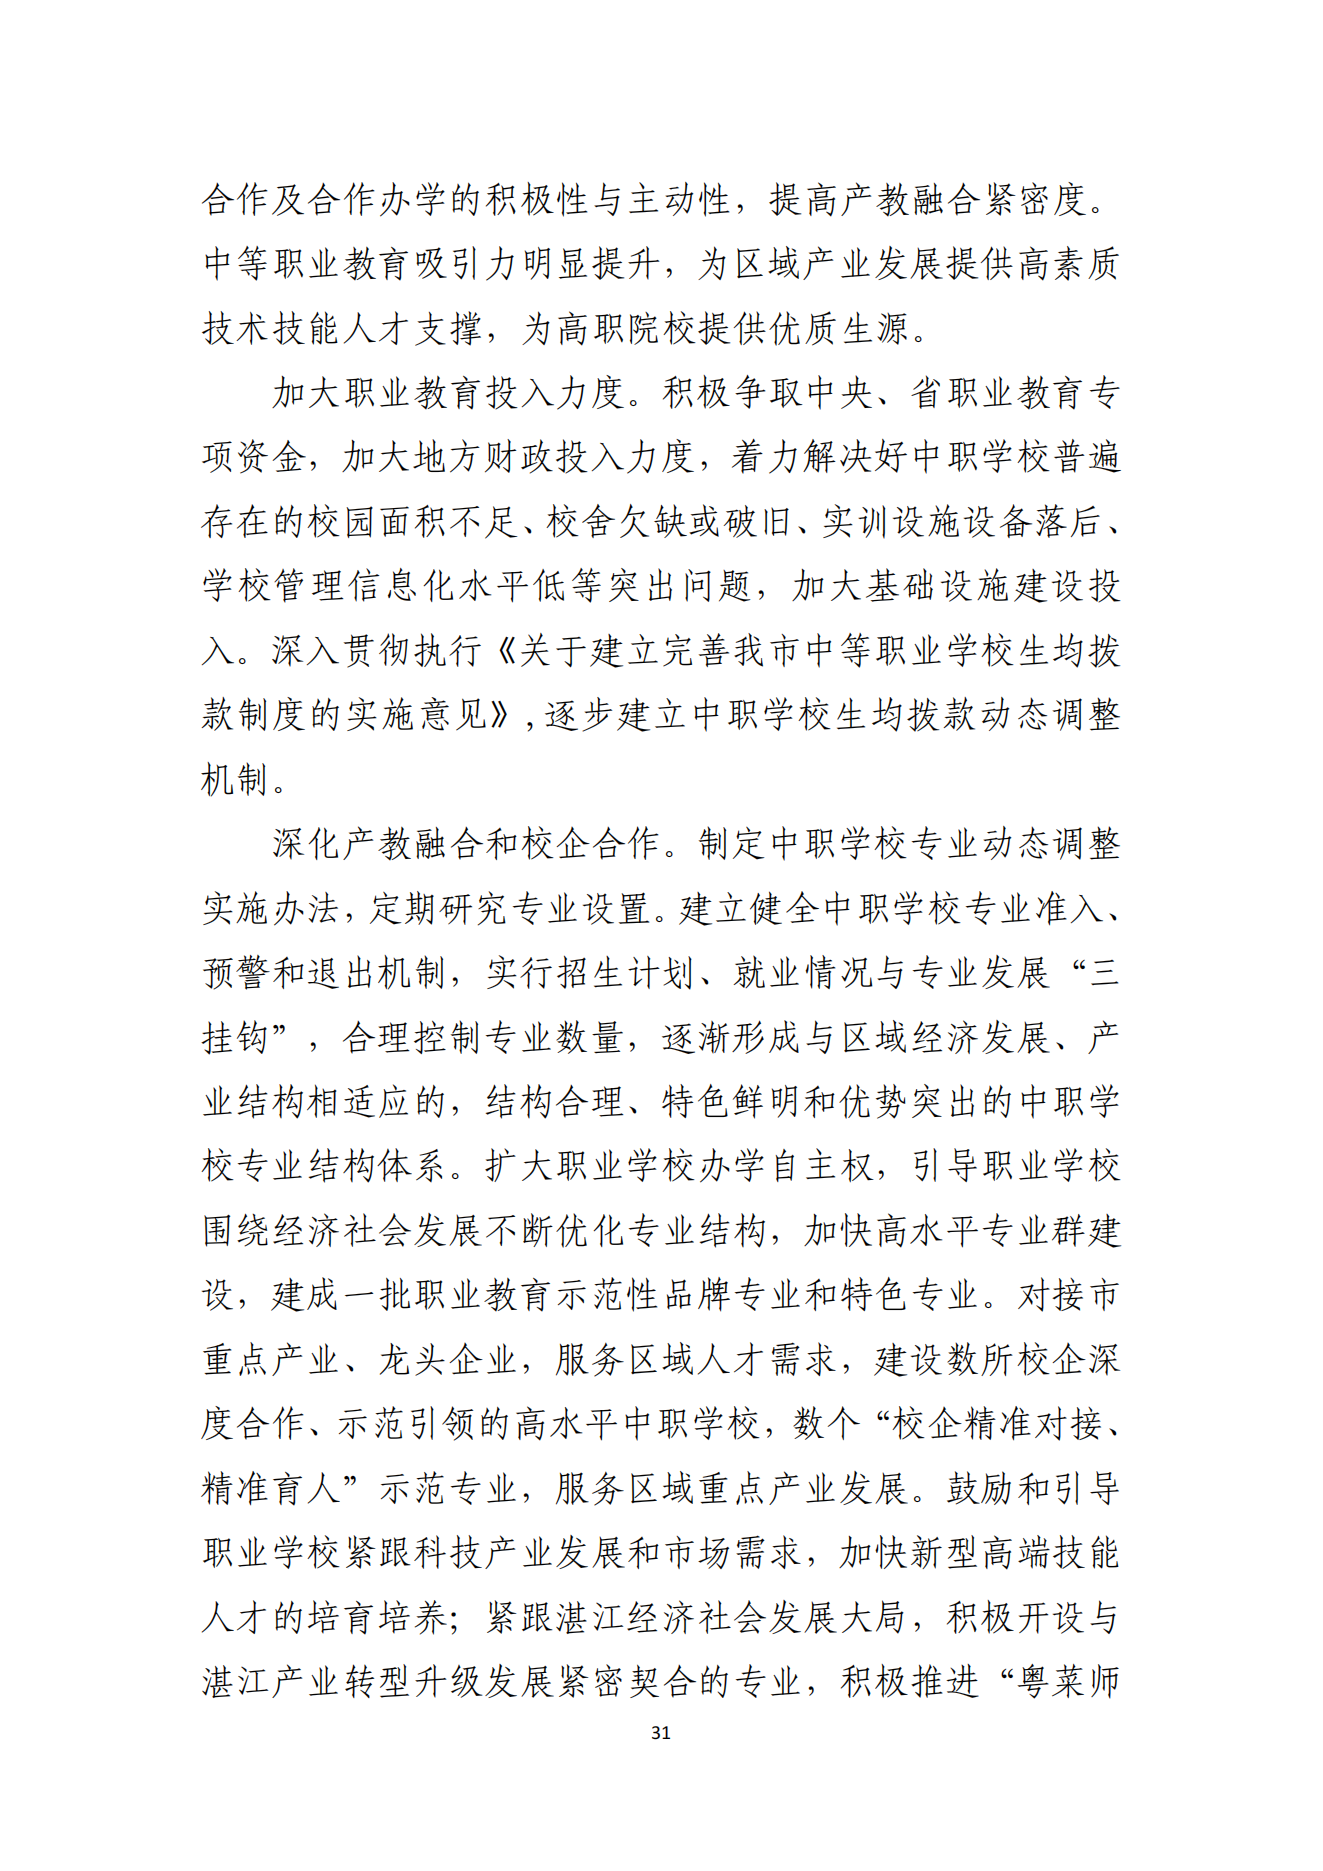 湛江市人民政府办公室关于印发湛江市教育发展“十四五”规划的通知_30.png